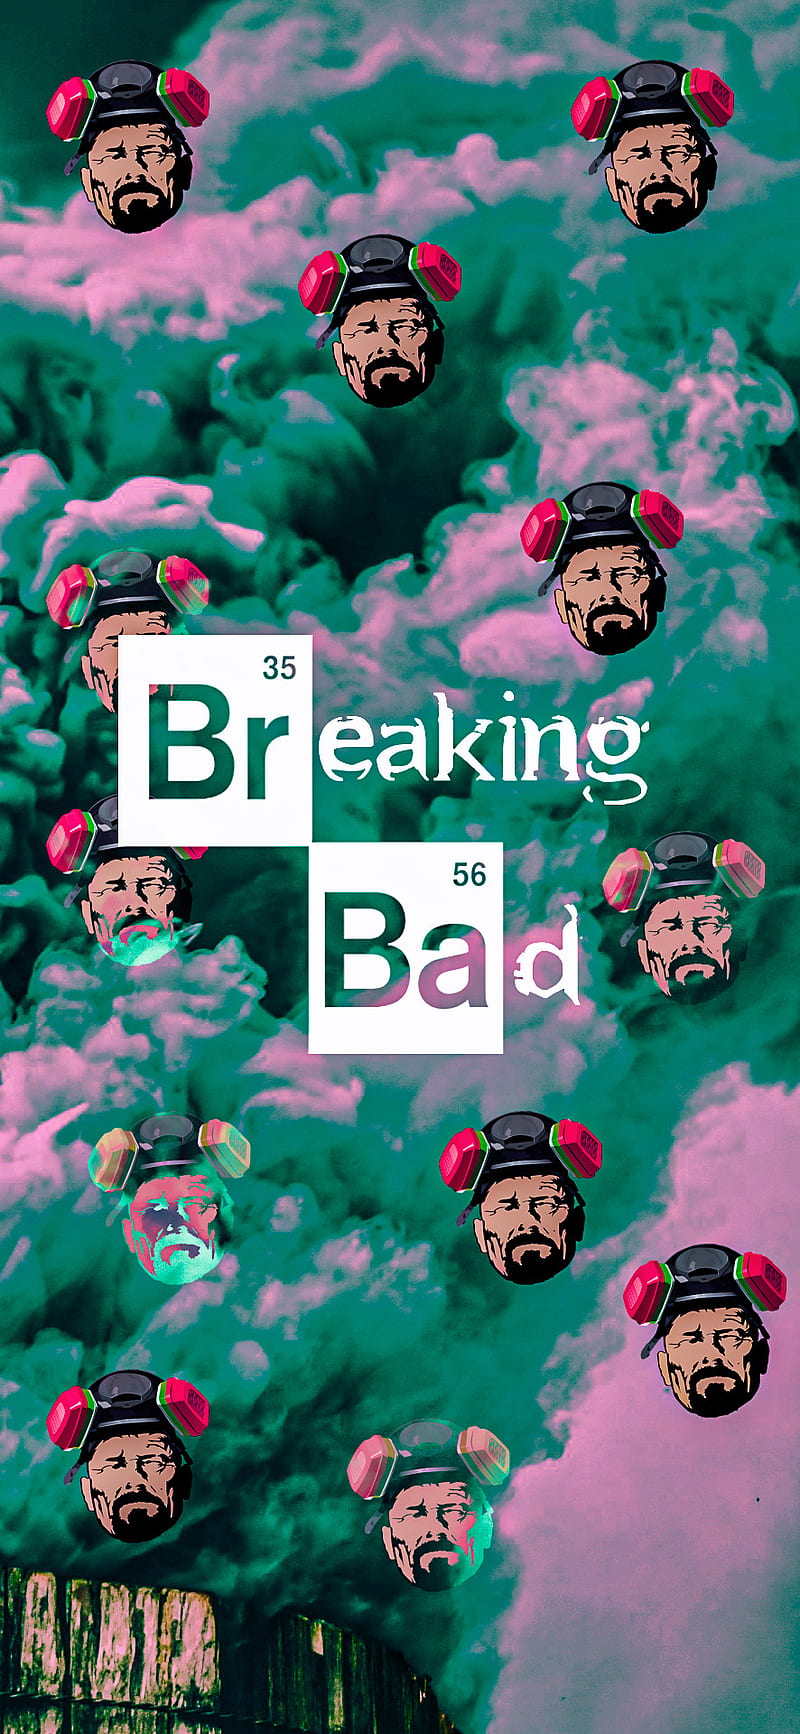 Breaking Bad, gustavo fring, heisenberg, jesse pinkman, mike, pollos  hermanos, HD phone wallpaper | Peakpx